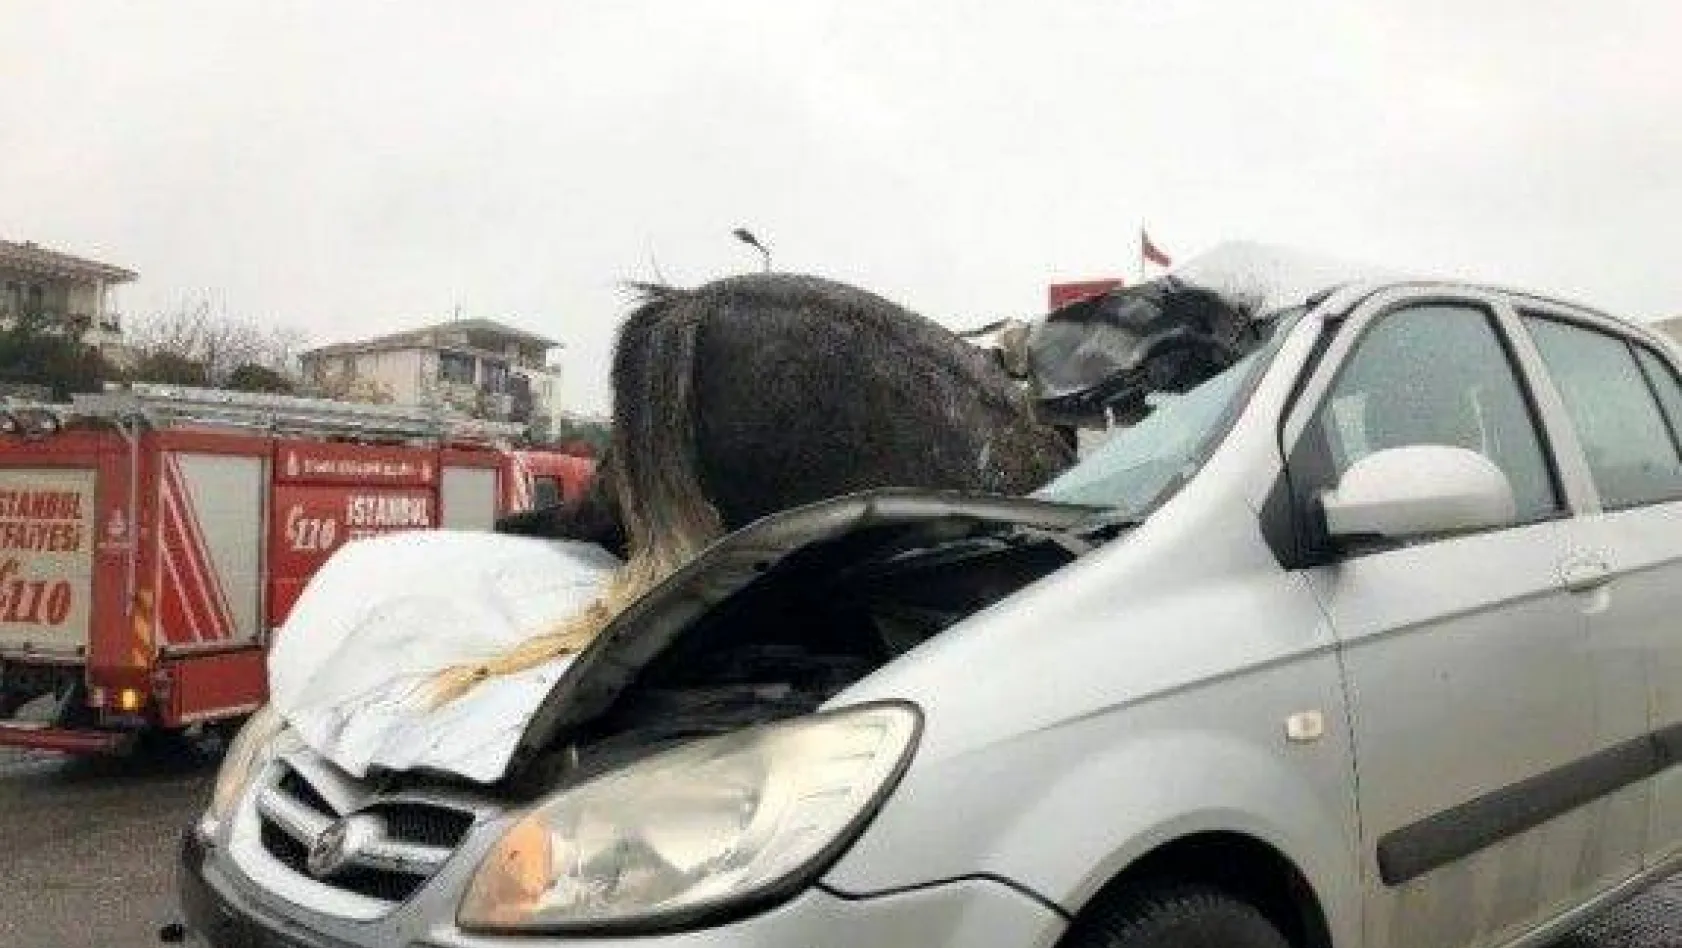 Kumburgaz'da korkunç kaza! Başıboş at, aracın ön camından içeri girdi